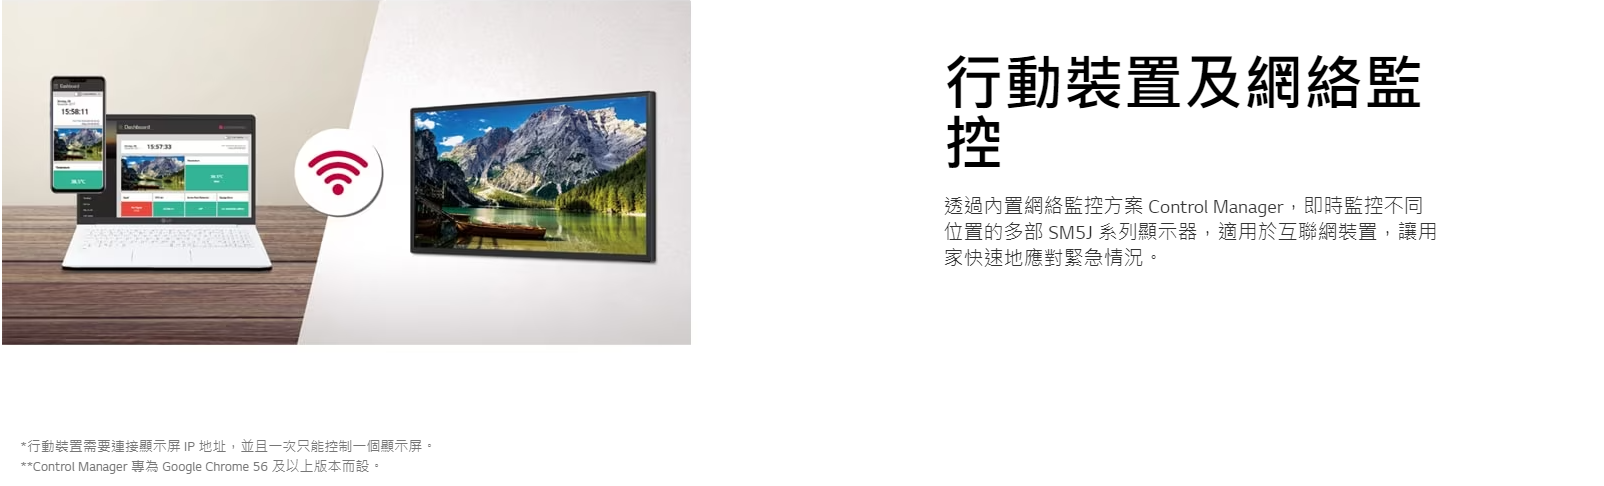 LG 樂金 32SM5J-B 32吋 SM5J 系列 電子顯示屏